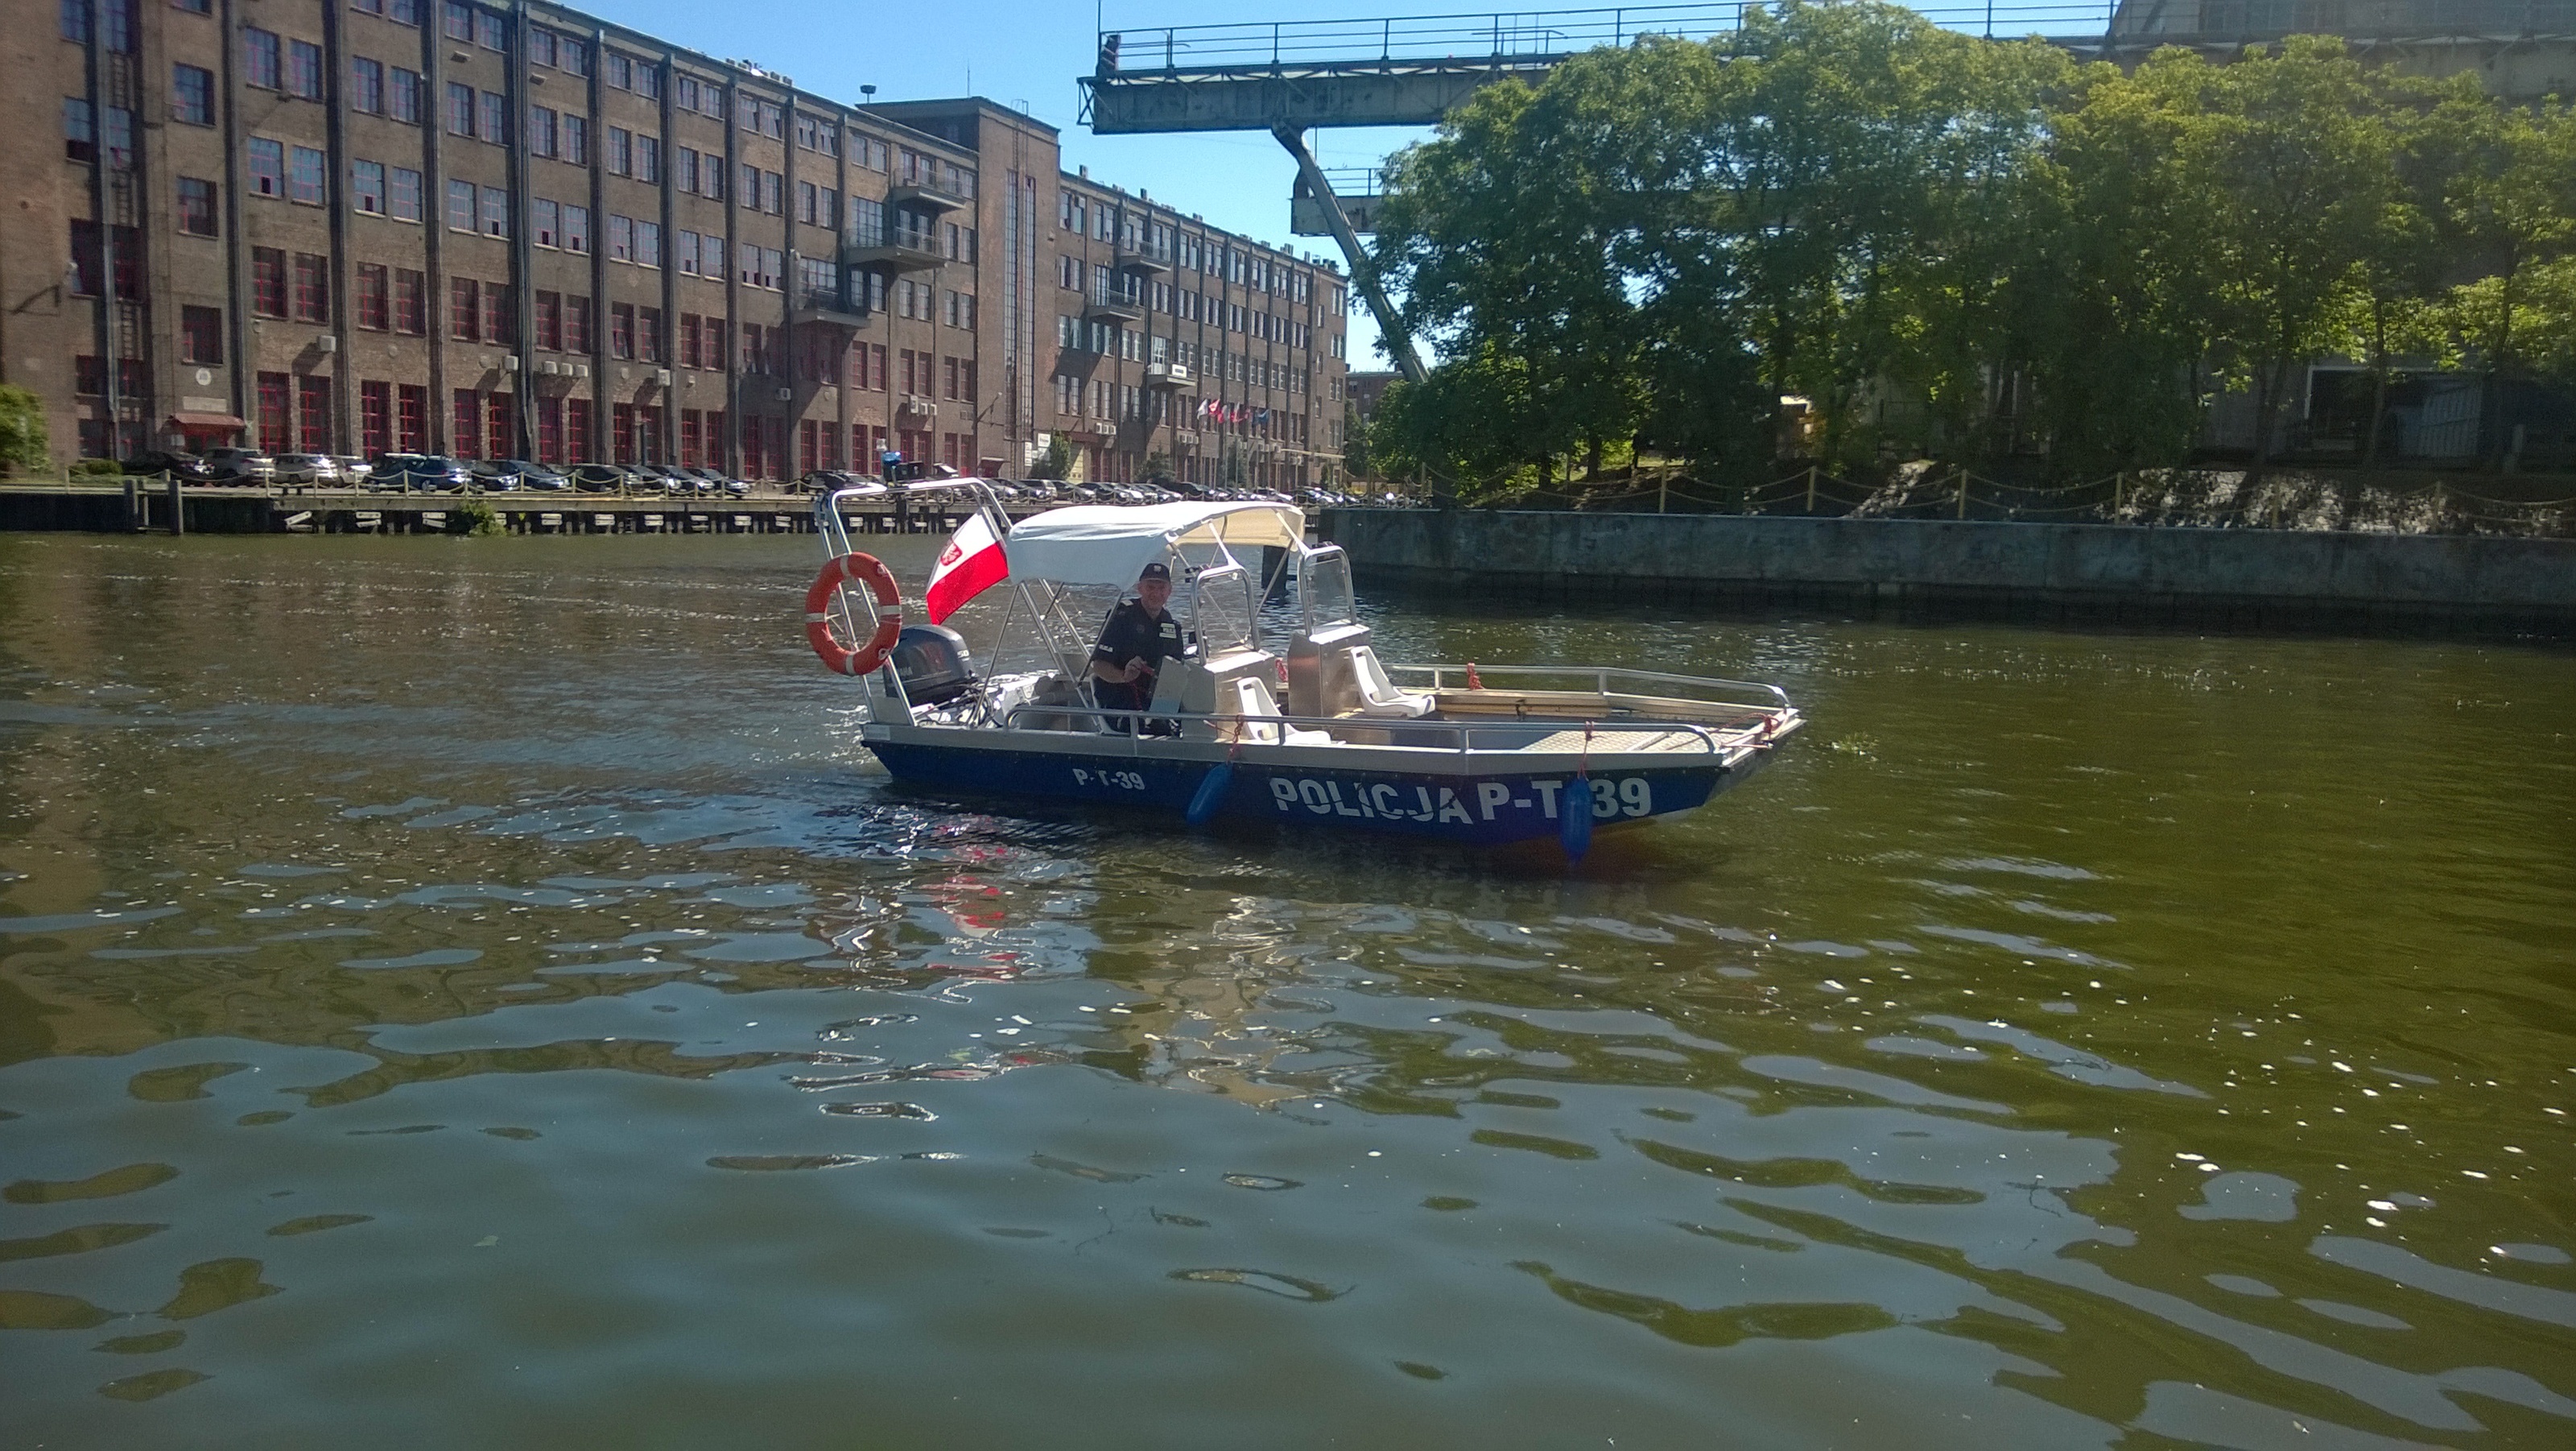 Nowa policyjna łódź w Elblągu